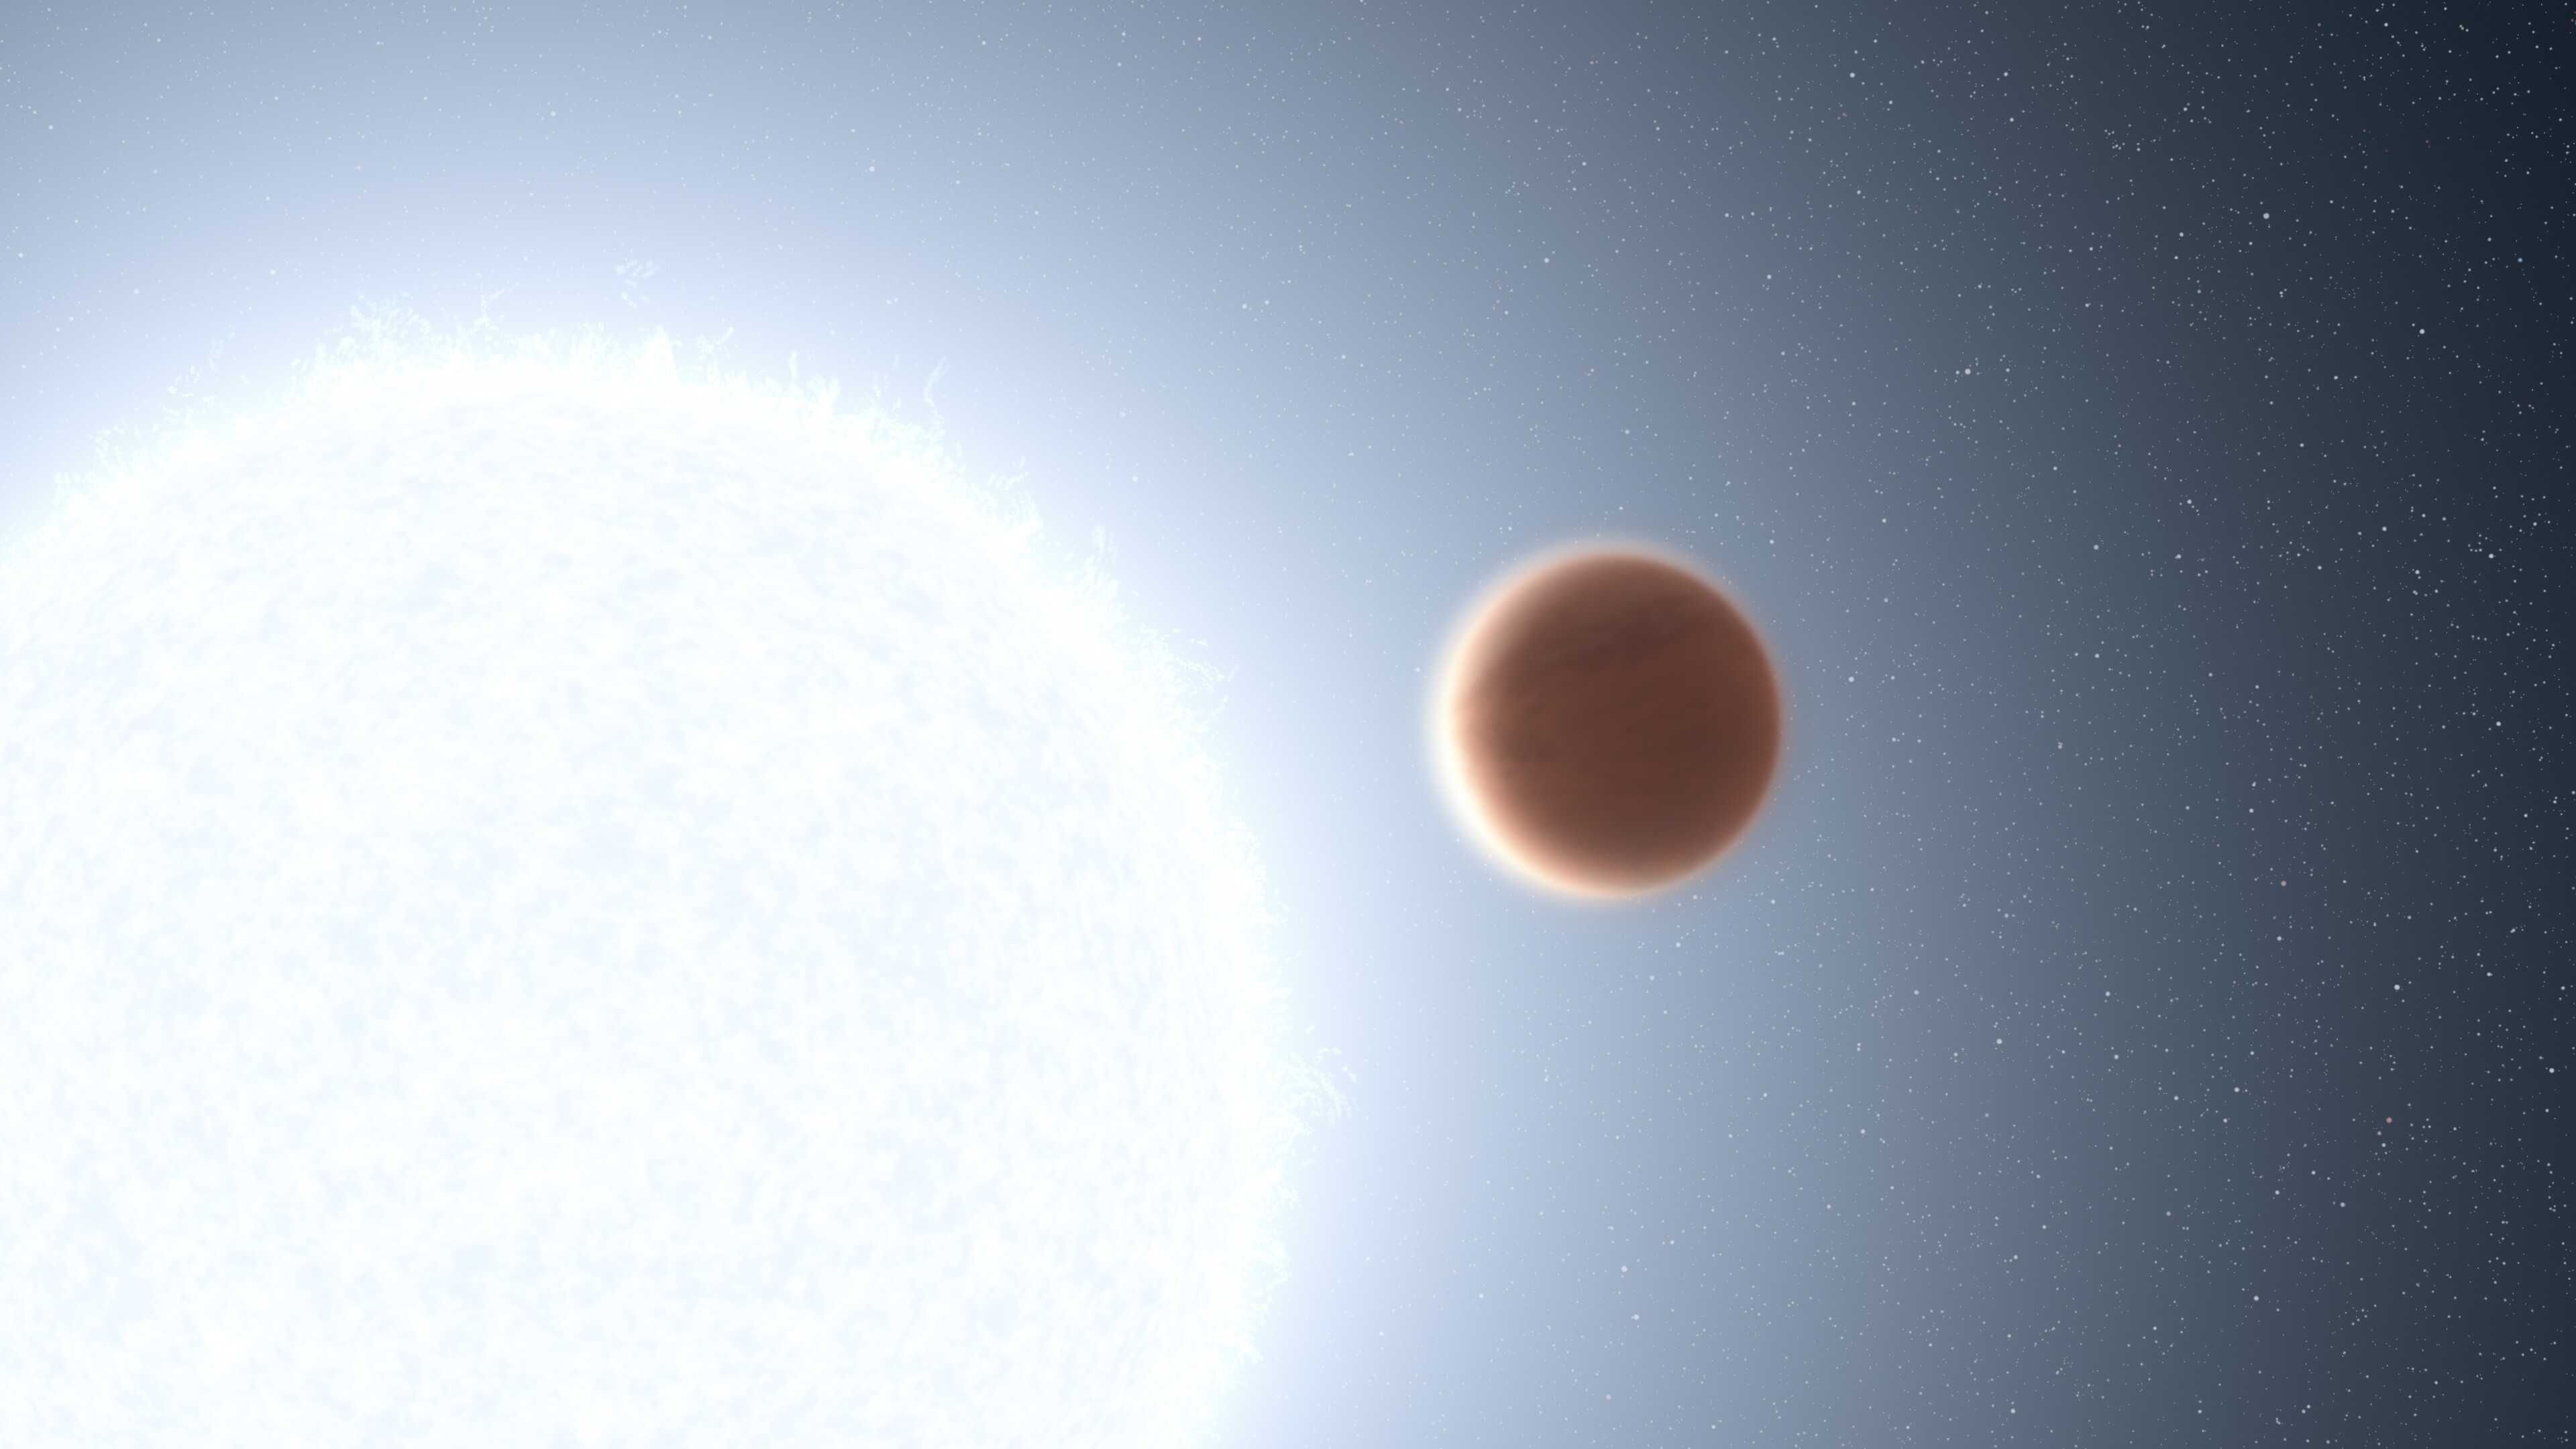 Астрономы нашли в атмосфере экзопланеты MASCARA-4b лантанид